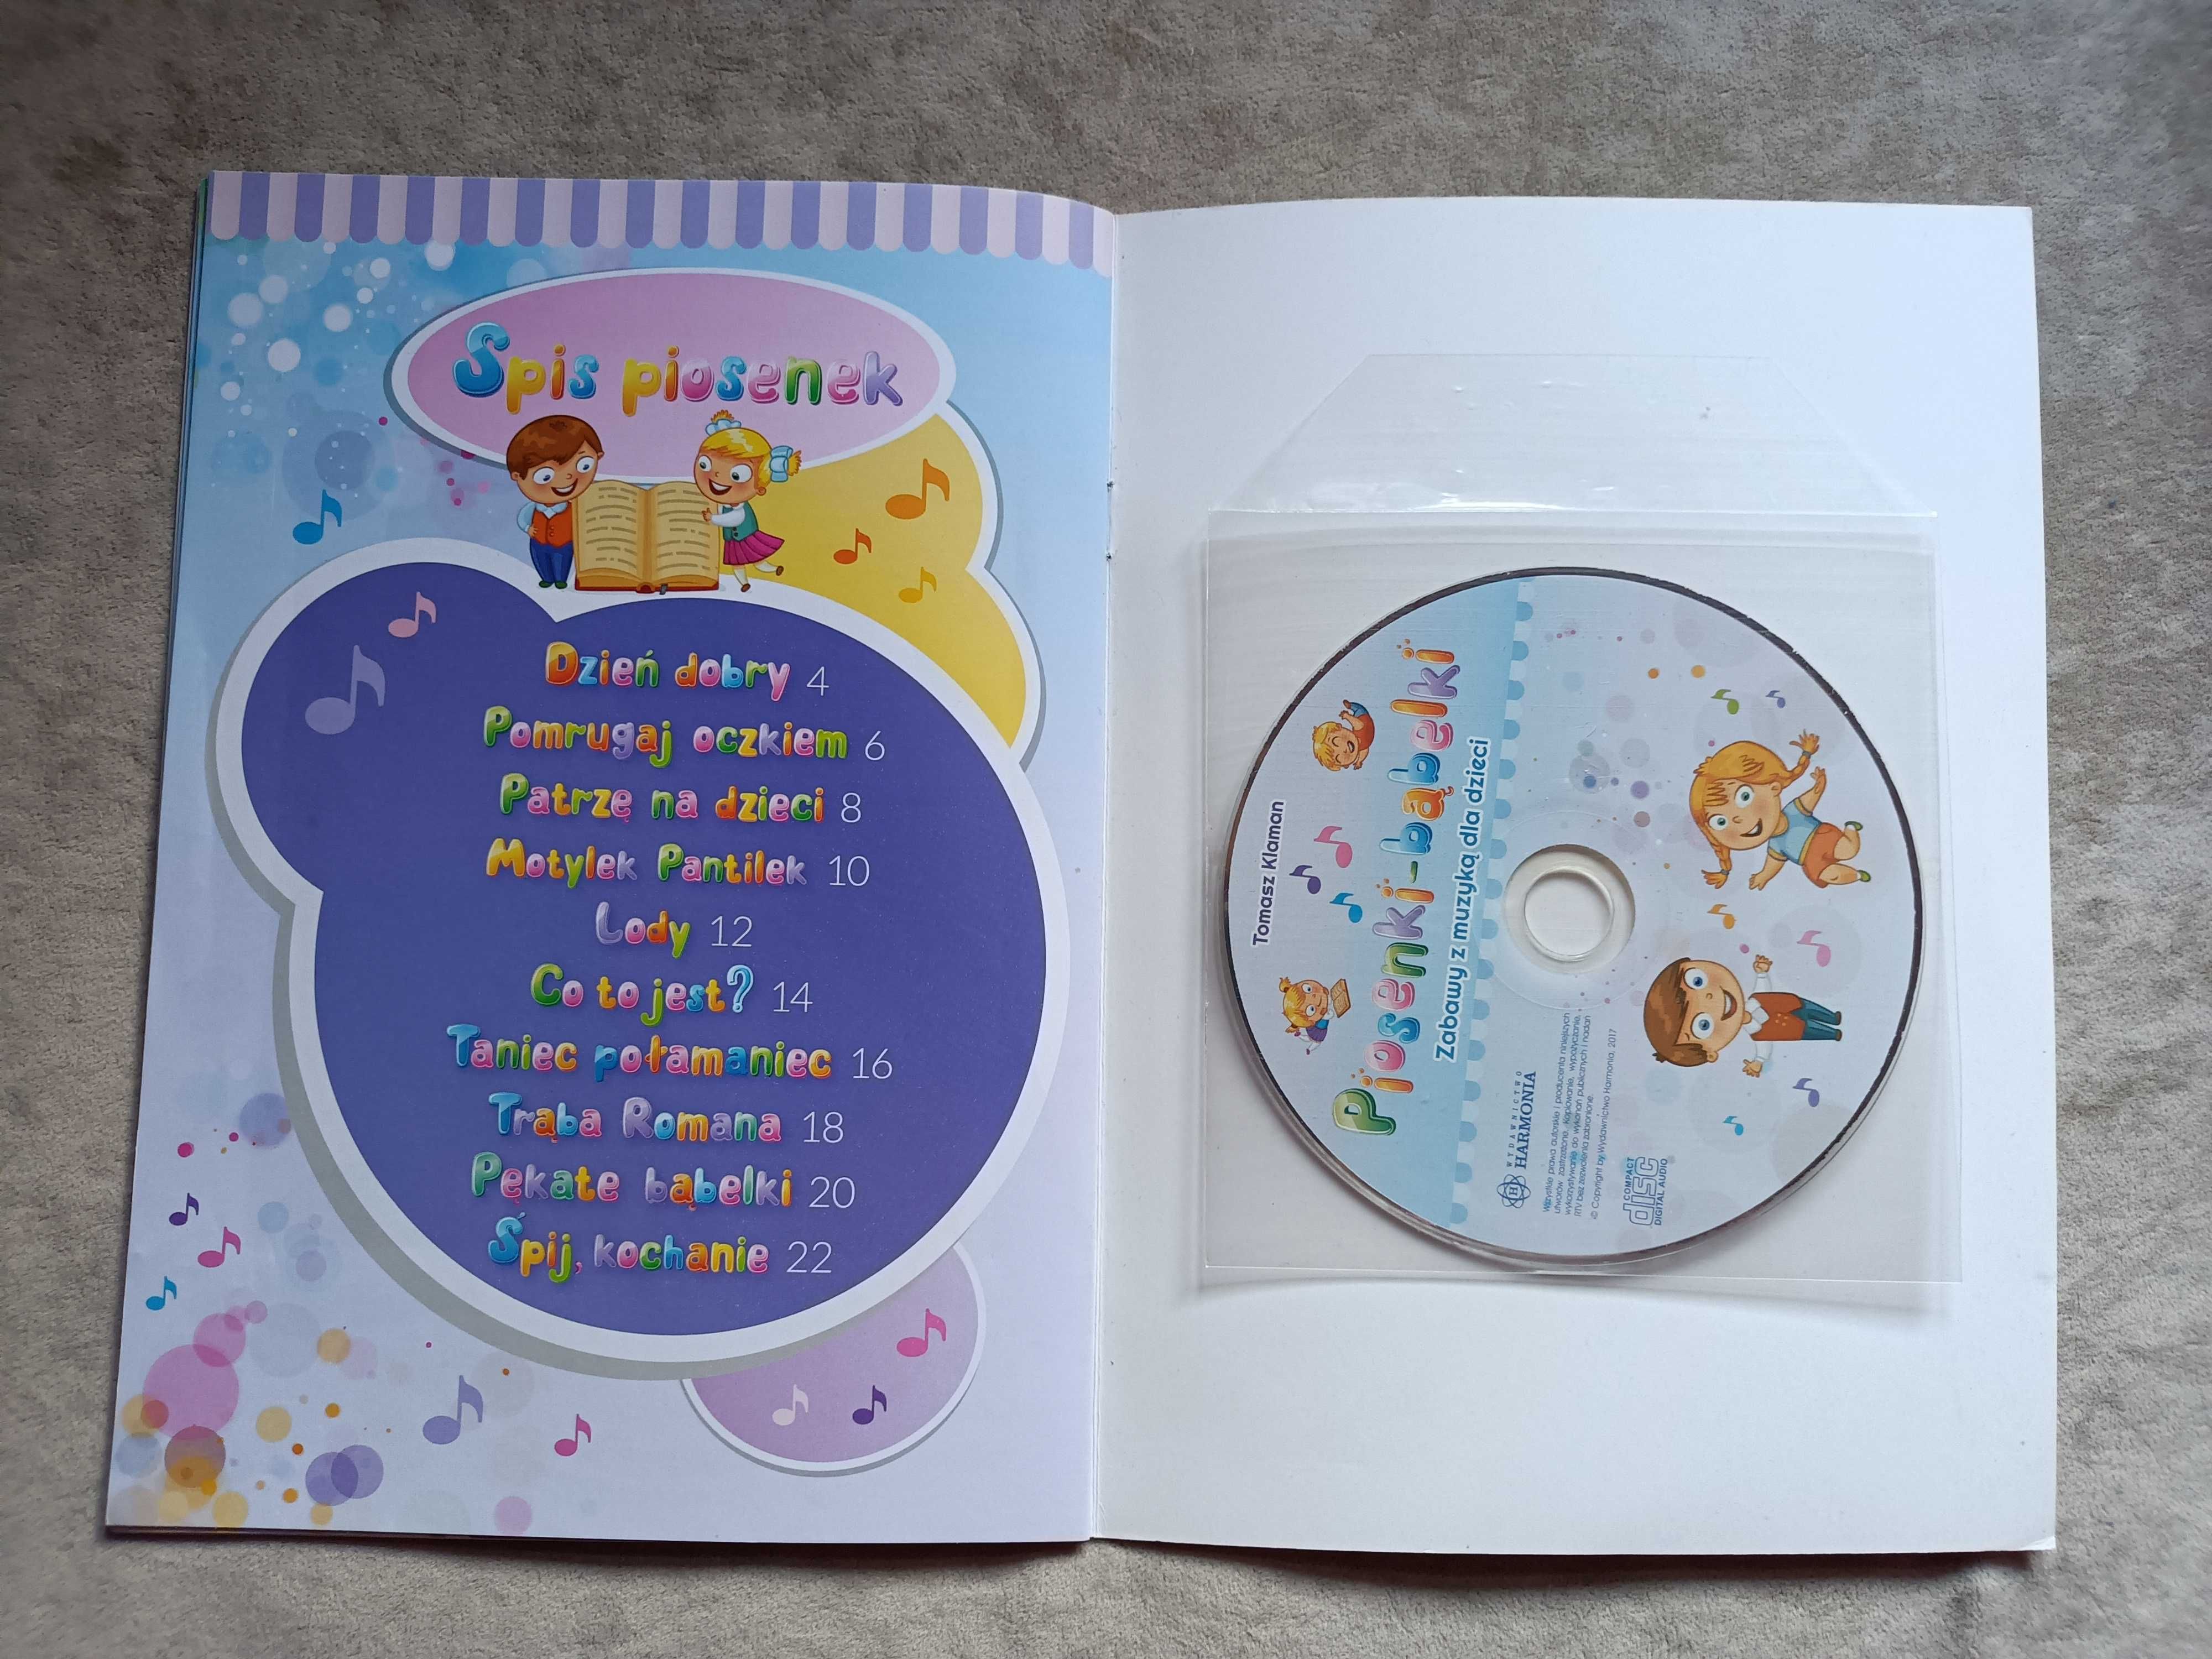 Piosenki perełki i bąbelki zabawy z muzyką dla dzieci 2 książki z CD